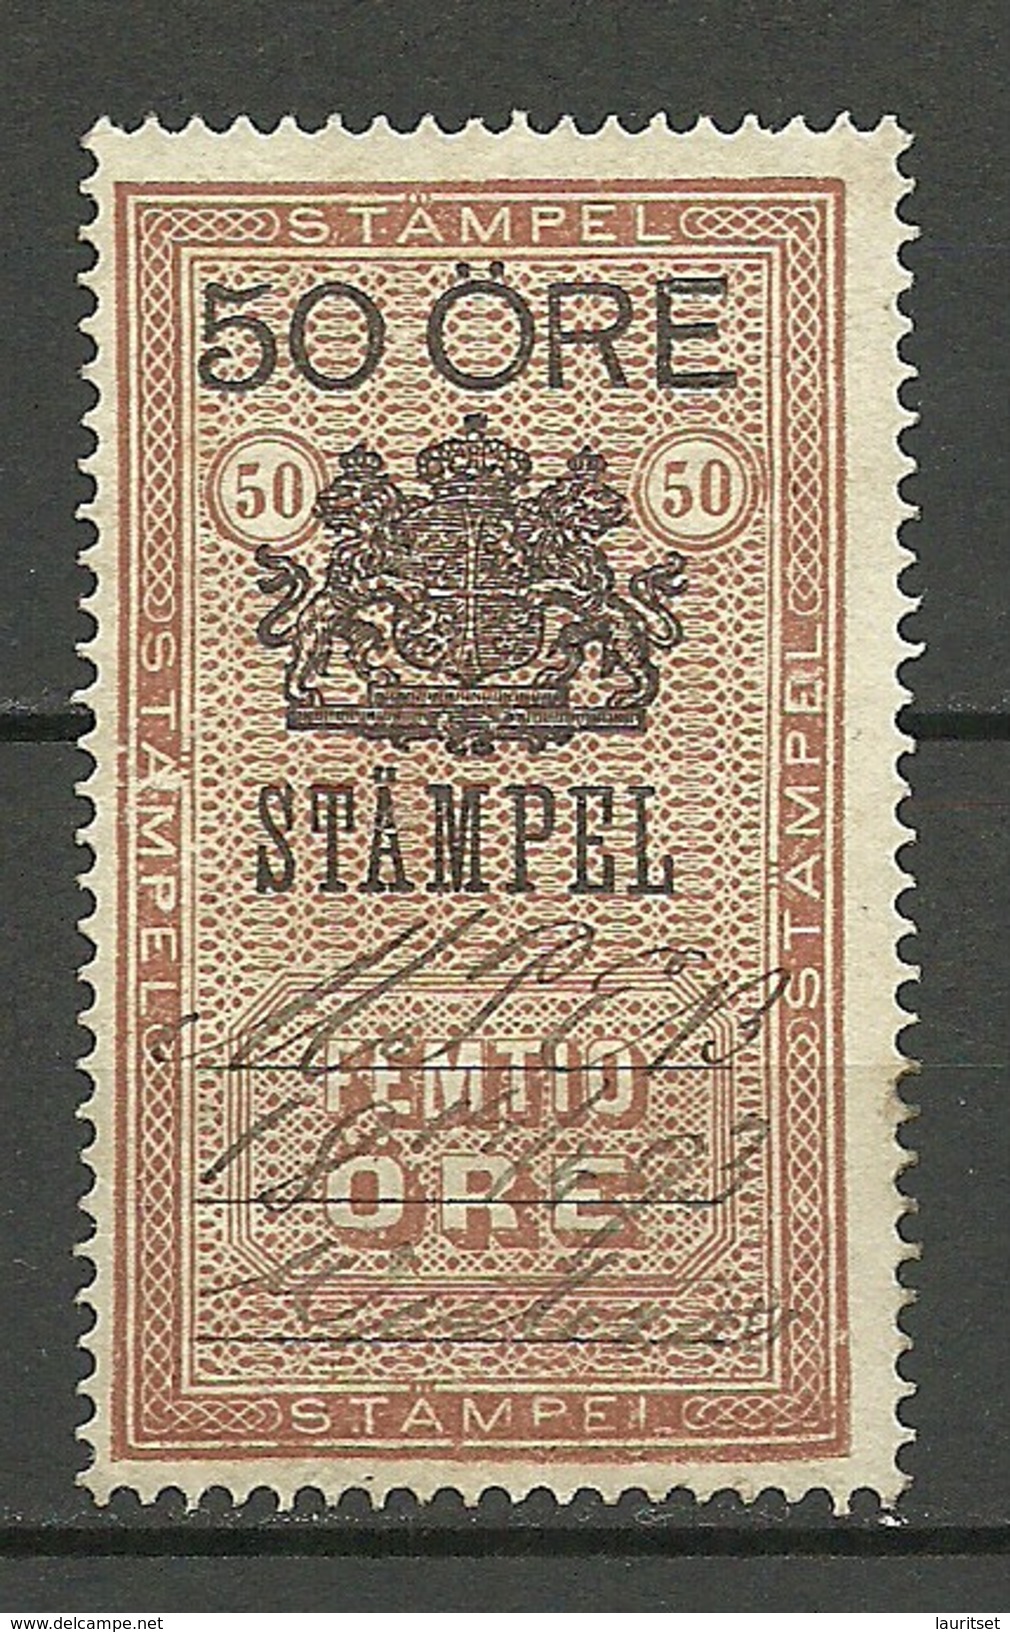 SCHWEDEN Sweden O 1893 Stempelmarke 50 öre O - Steuermarken